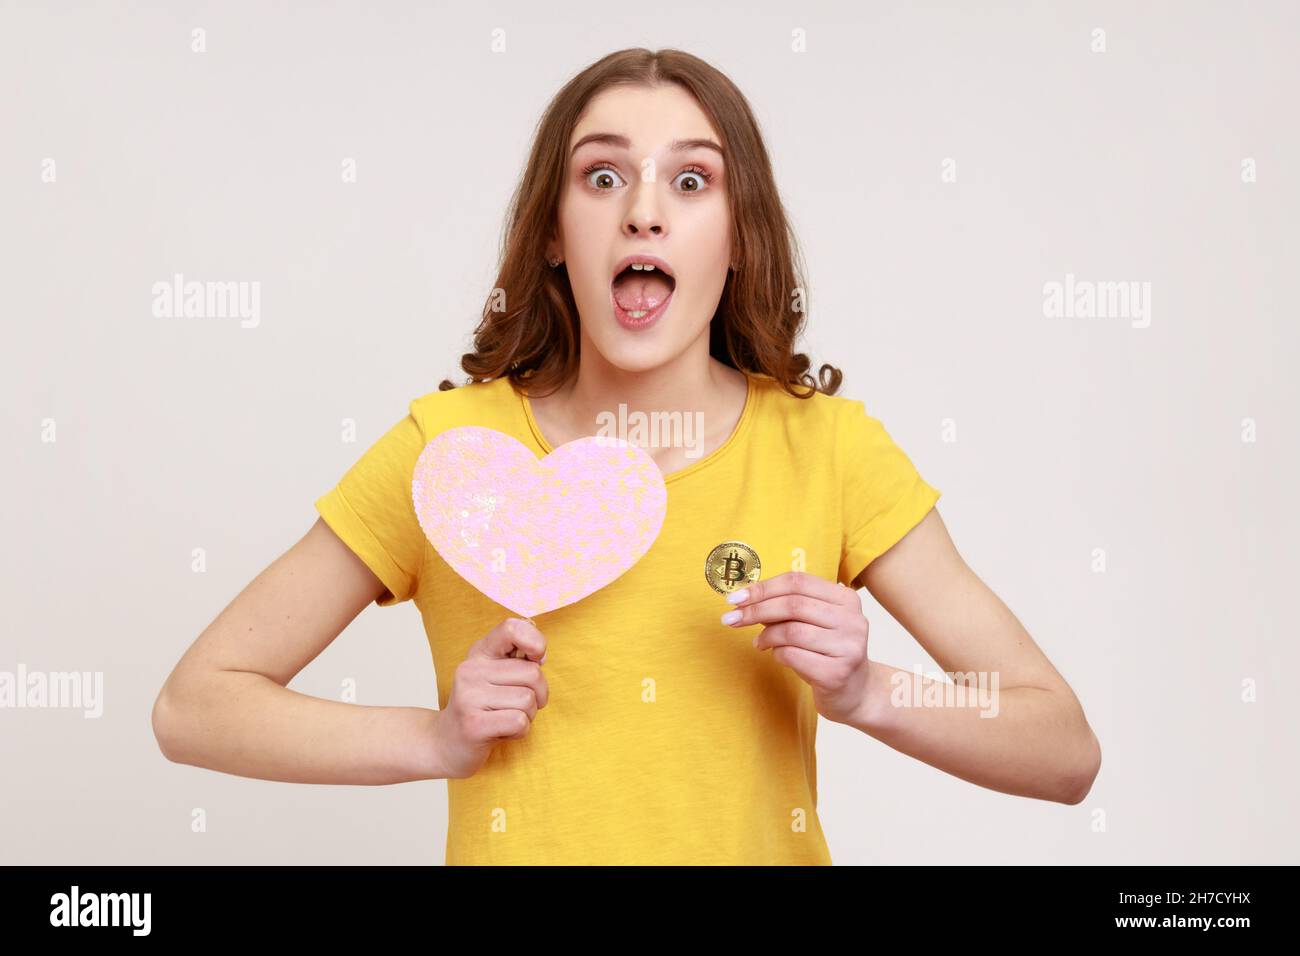 Porträt der jungen überraschten Frau in gelben casual T-Shirt mit rosa Herz auf Stick und physischen Bitcoin, hat Gesichtsausdruck schockiert, Kryptowährung. Innenaufnahme des Studios isoliert auf grauem Hintergrund Stockfoto